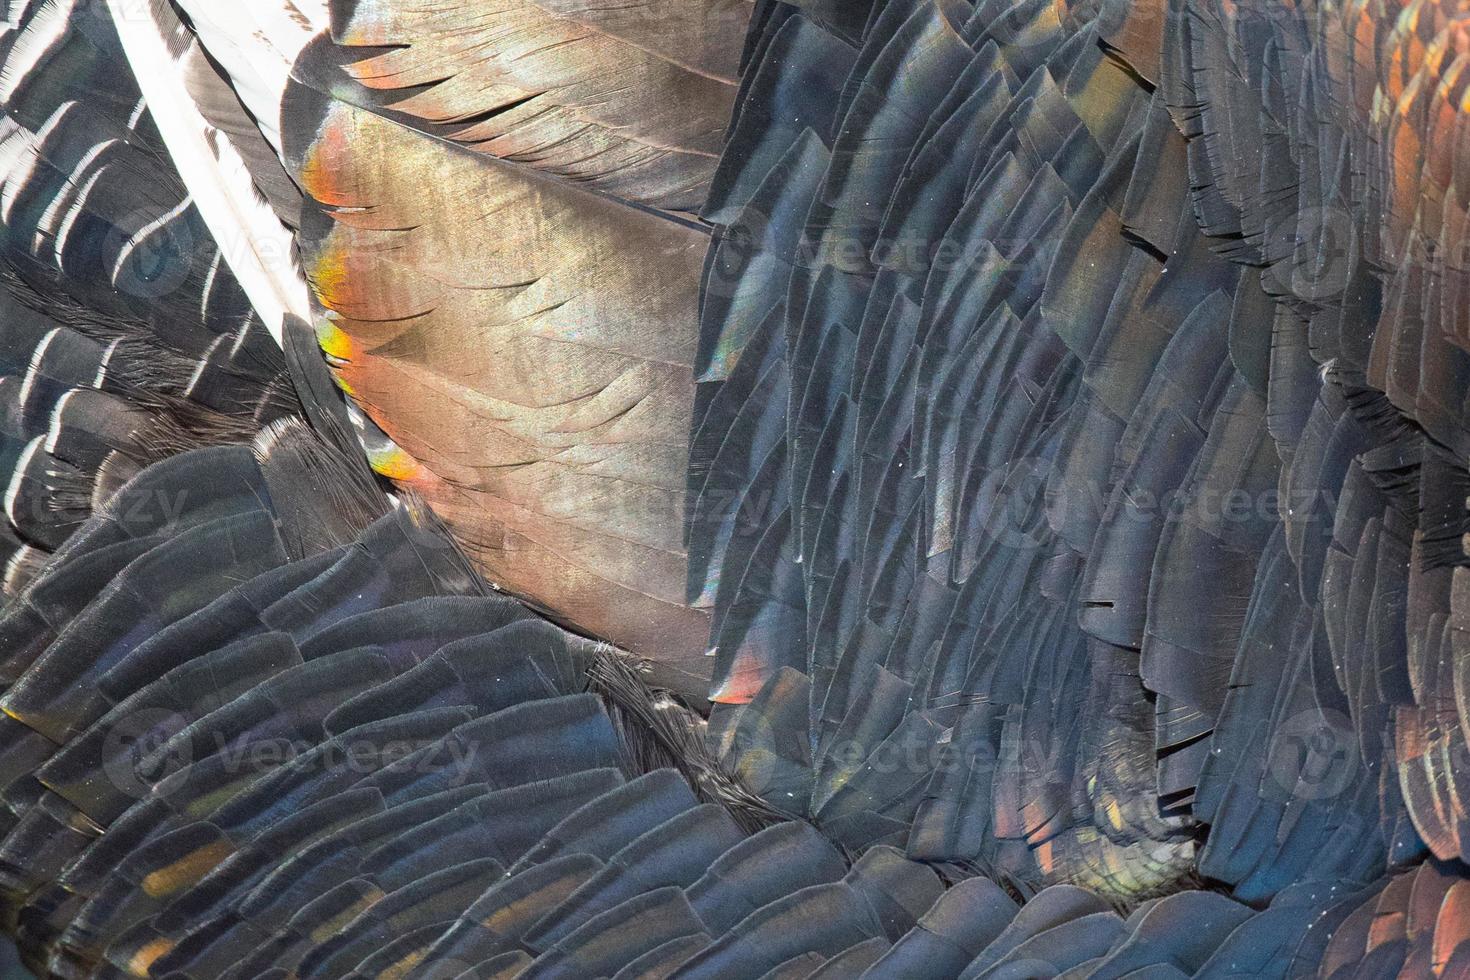 Turkey feathers rainbow metallic background photo